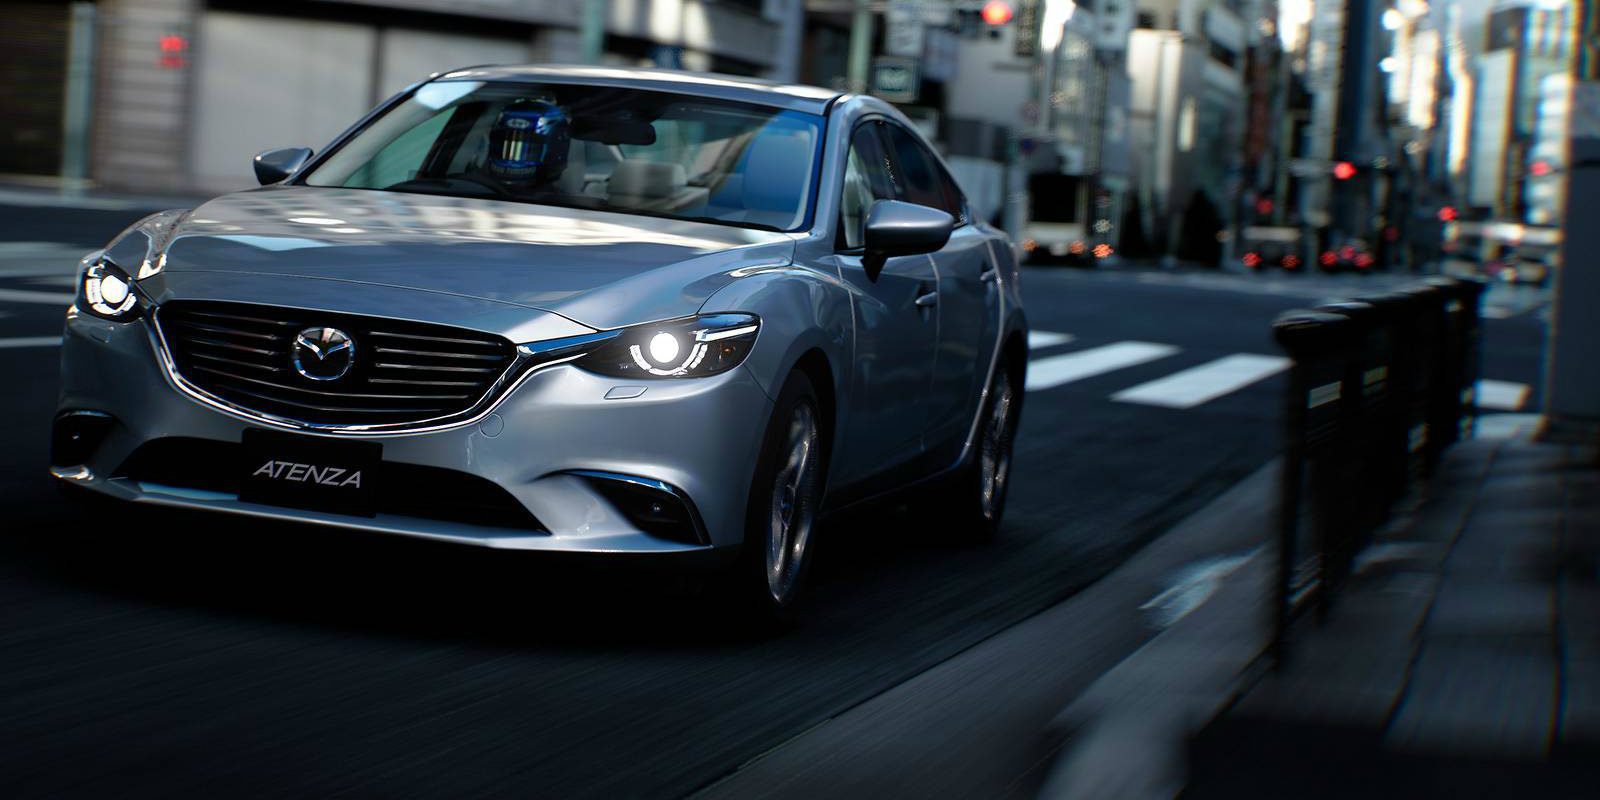 Sony Taiwan anuncia una edición de 'Gran Turismo Sport' con un Mazda MX-5 real incluido